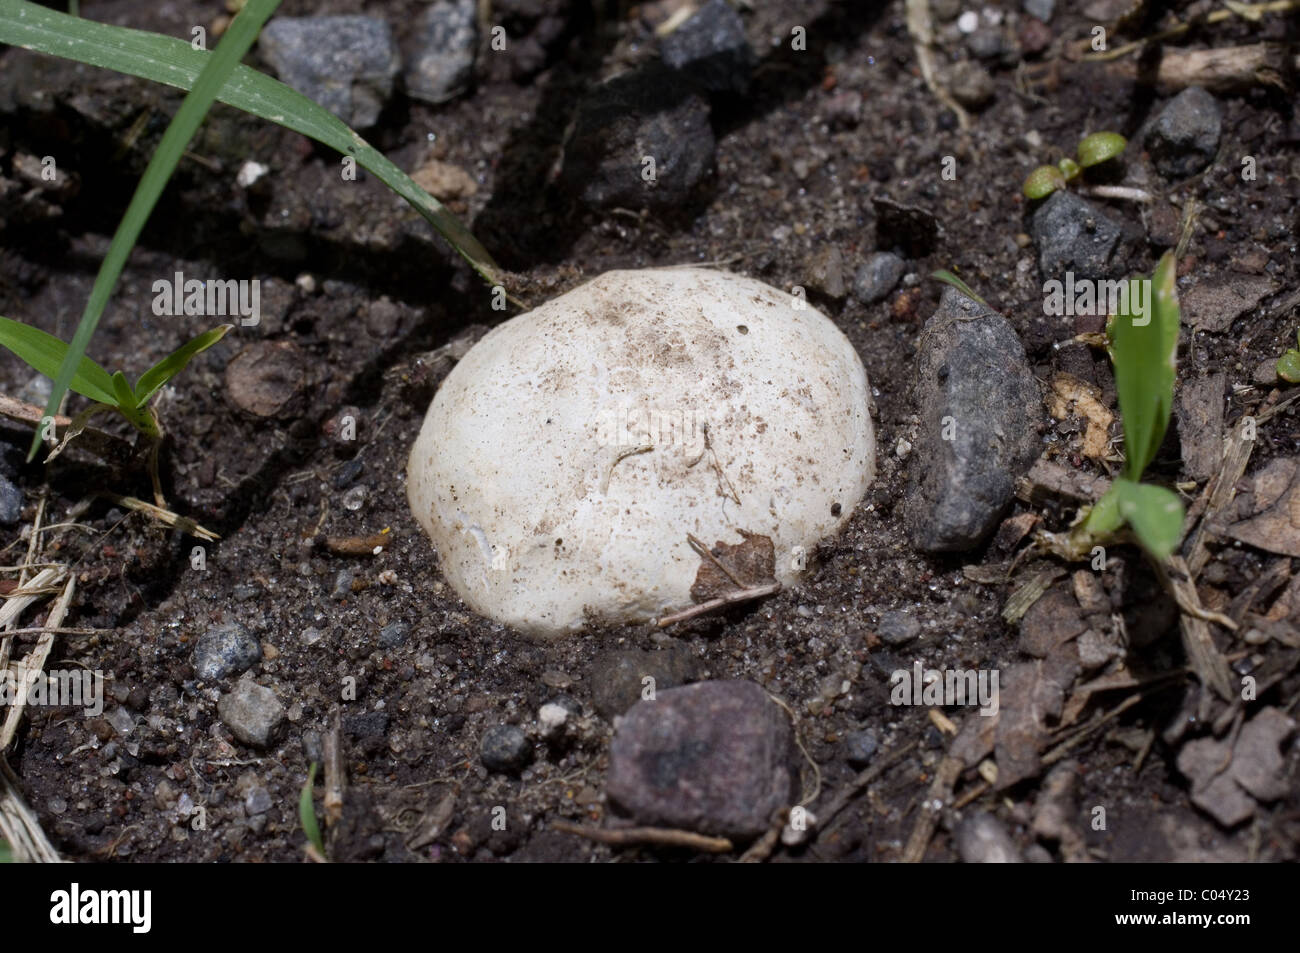 Mushroom sprouting Stock Photo